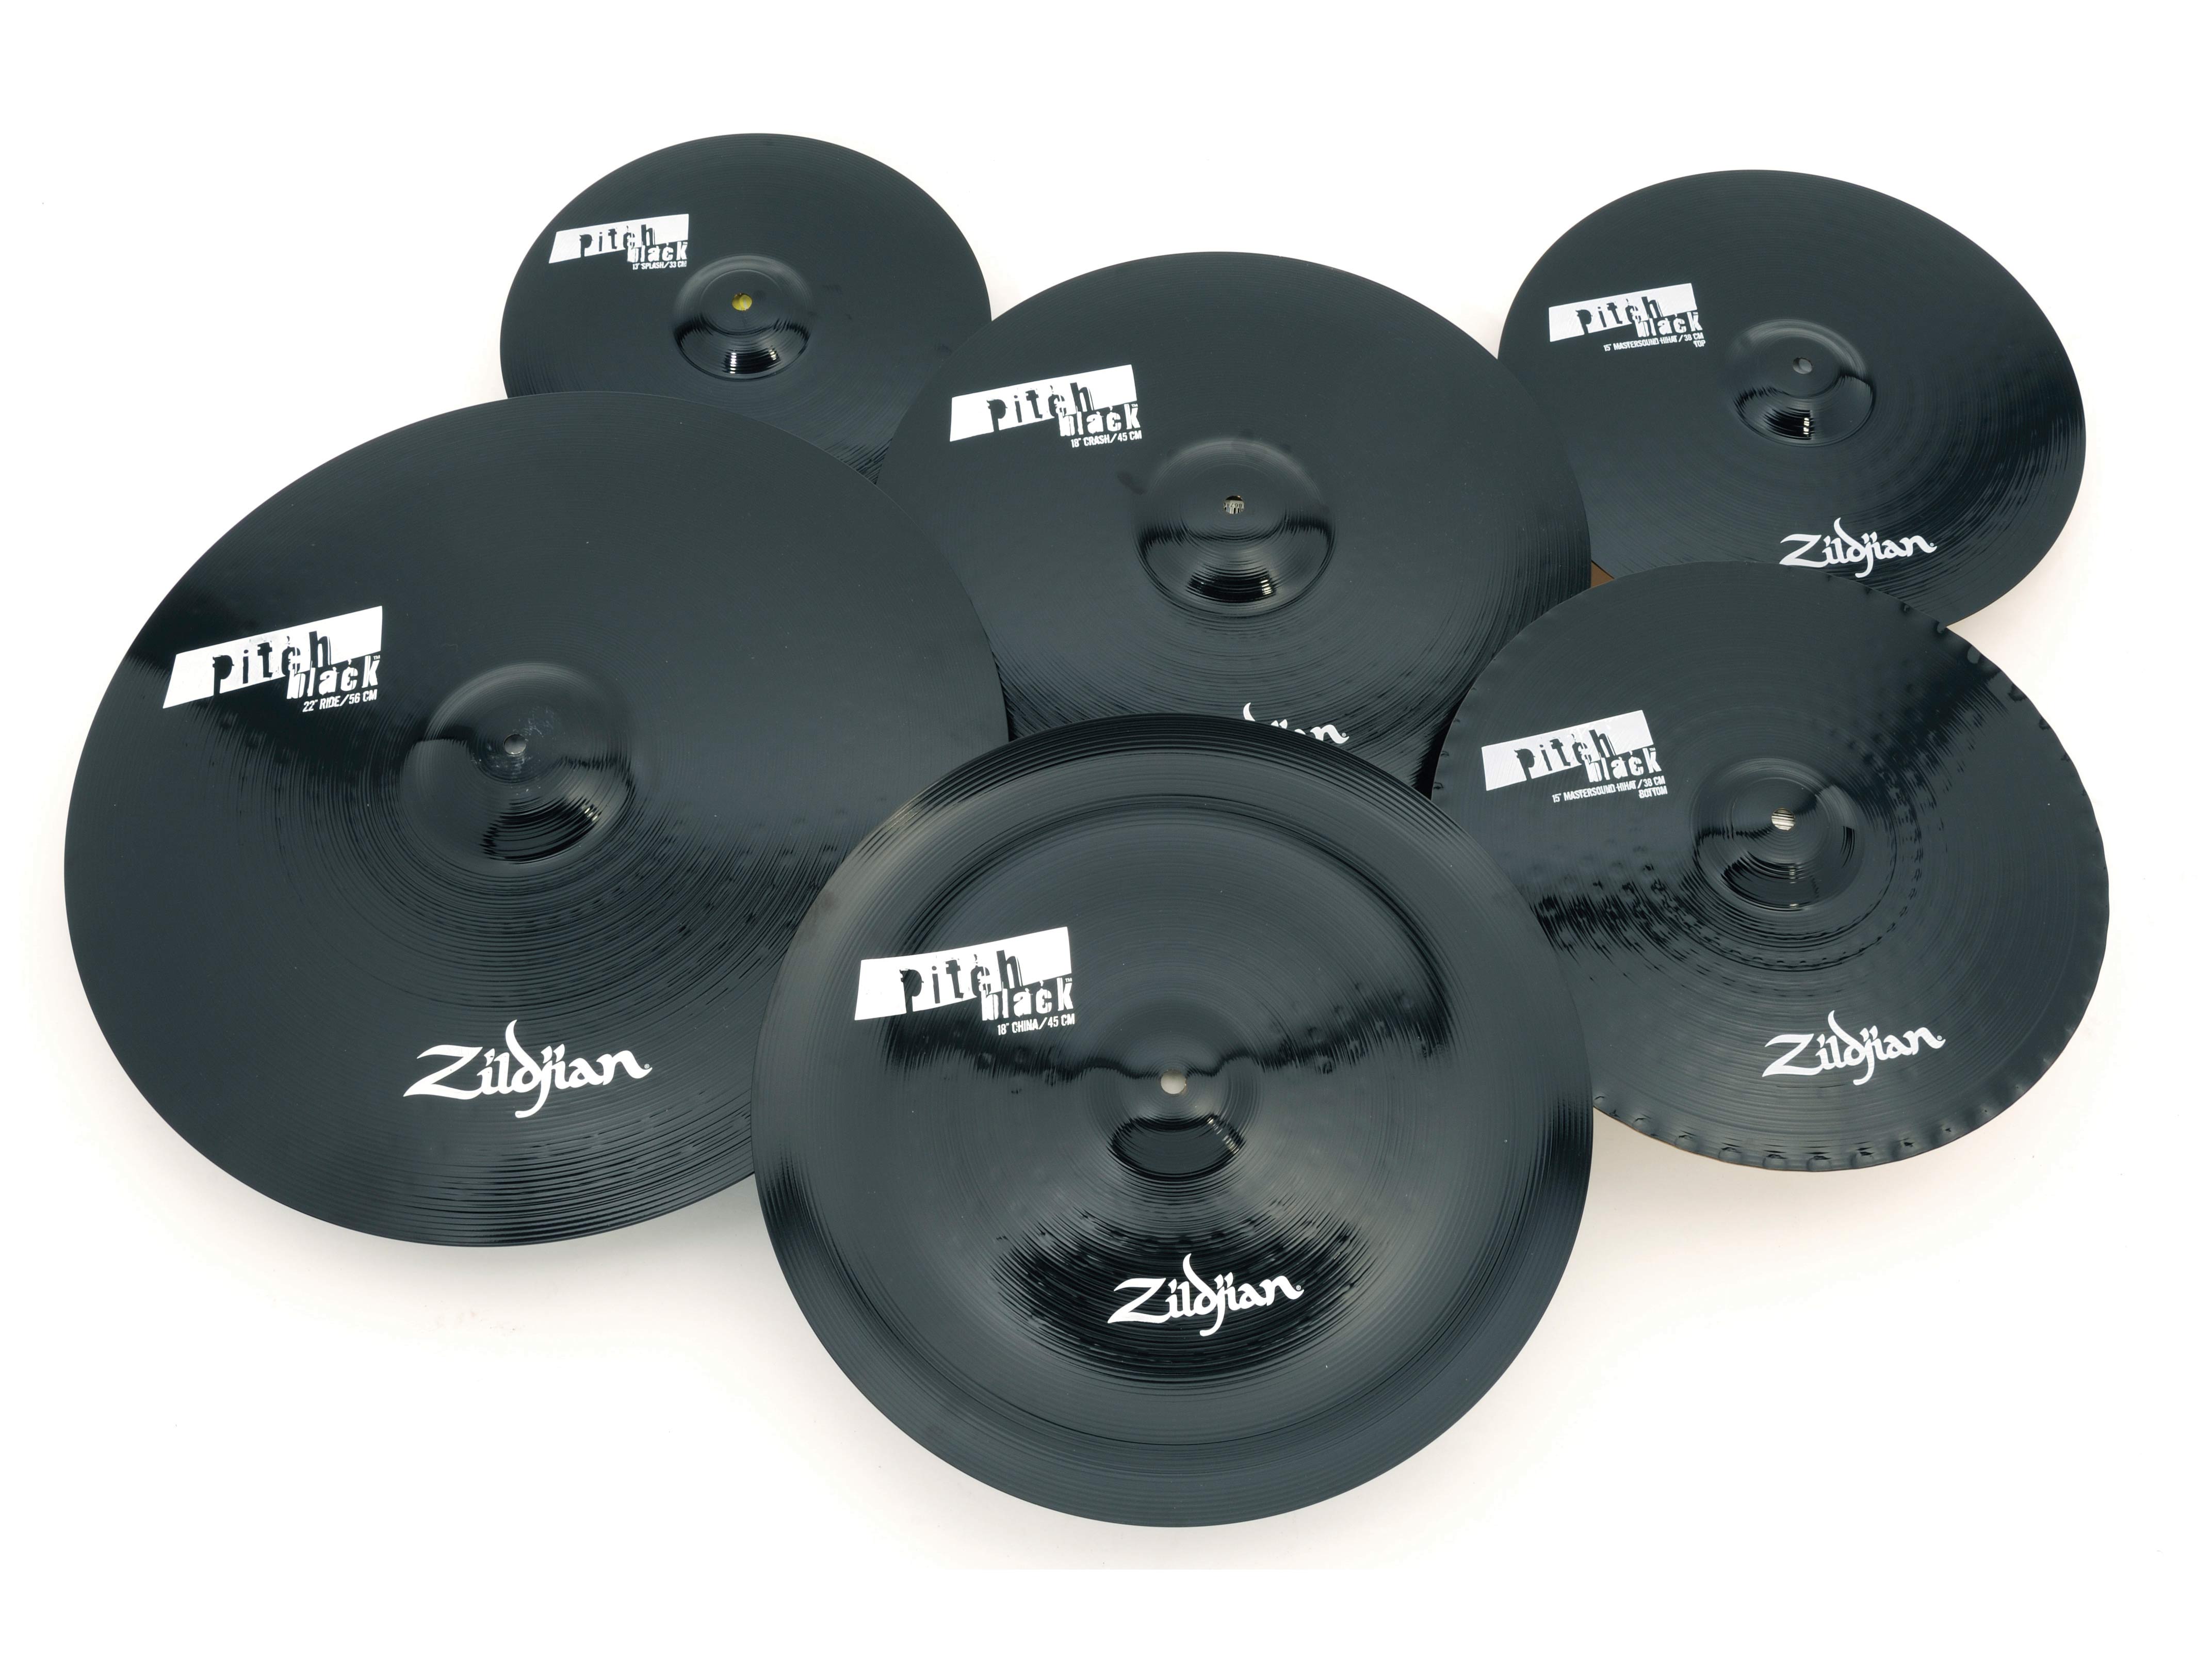 Zildjian Pitch Black Cymbals review